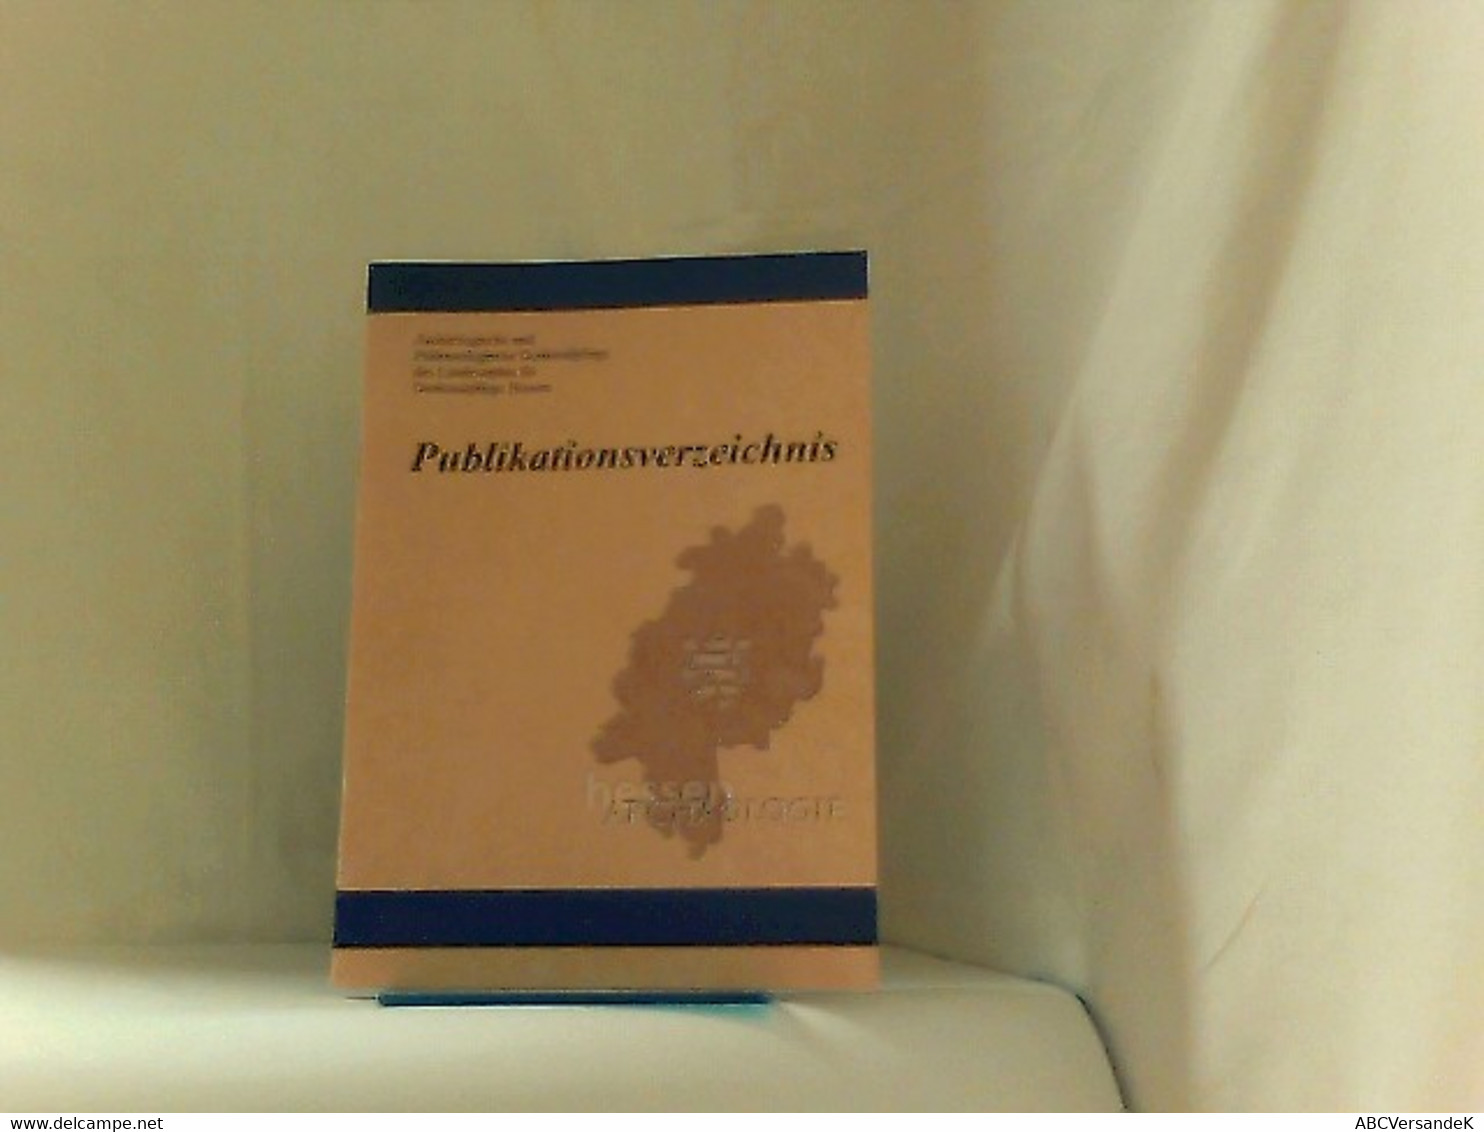 Publikationsverzeichnis Hessen Archäologie - Hesse